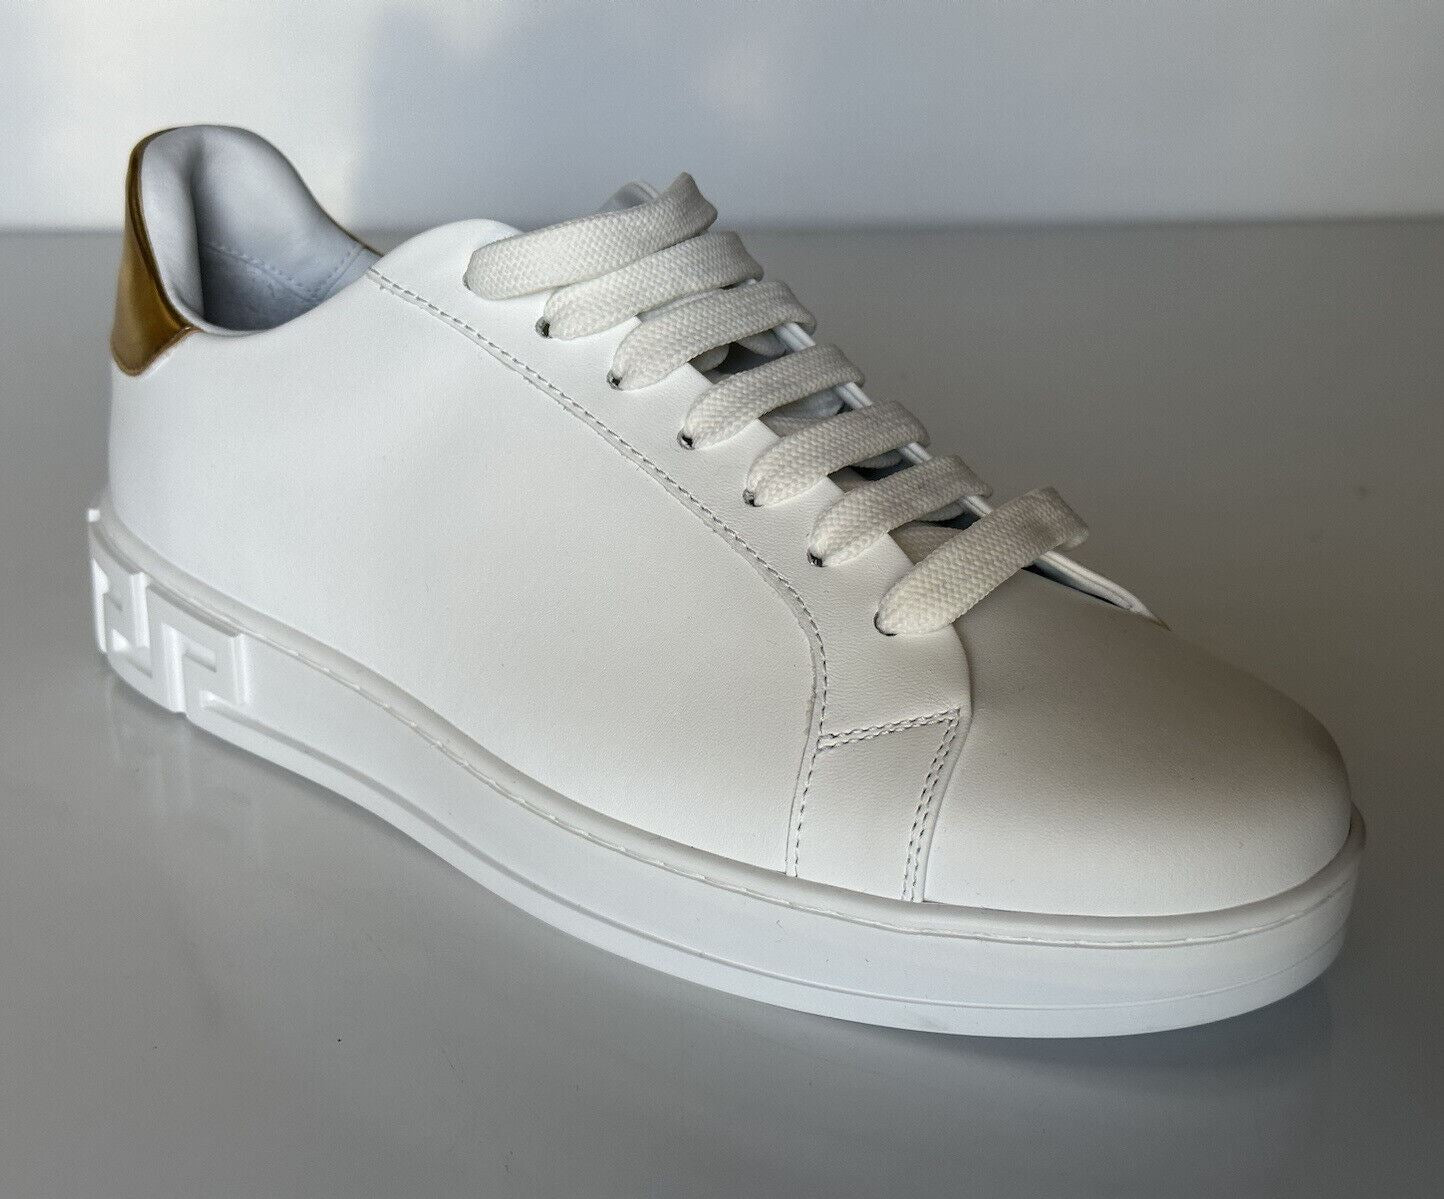 NIB Versace Low Top Женские белые кожаные кроссовки 9 США (39 евро) Сделано в Италии 